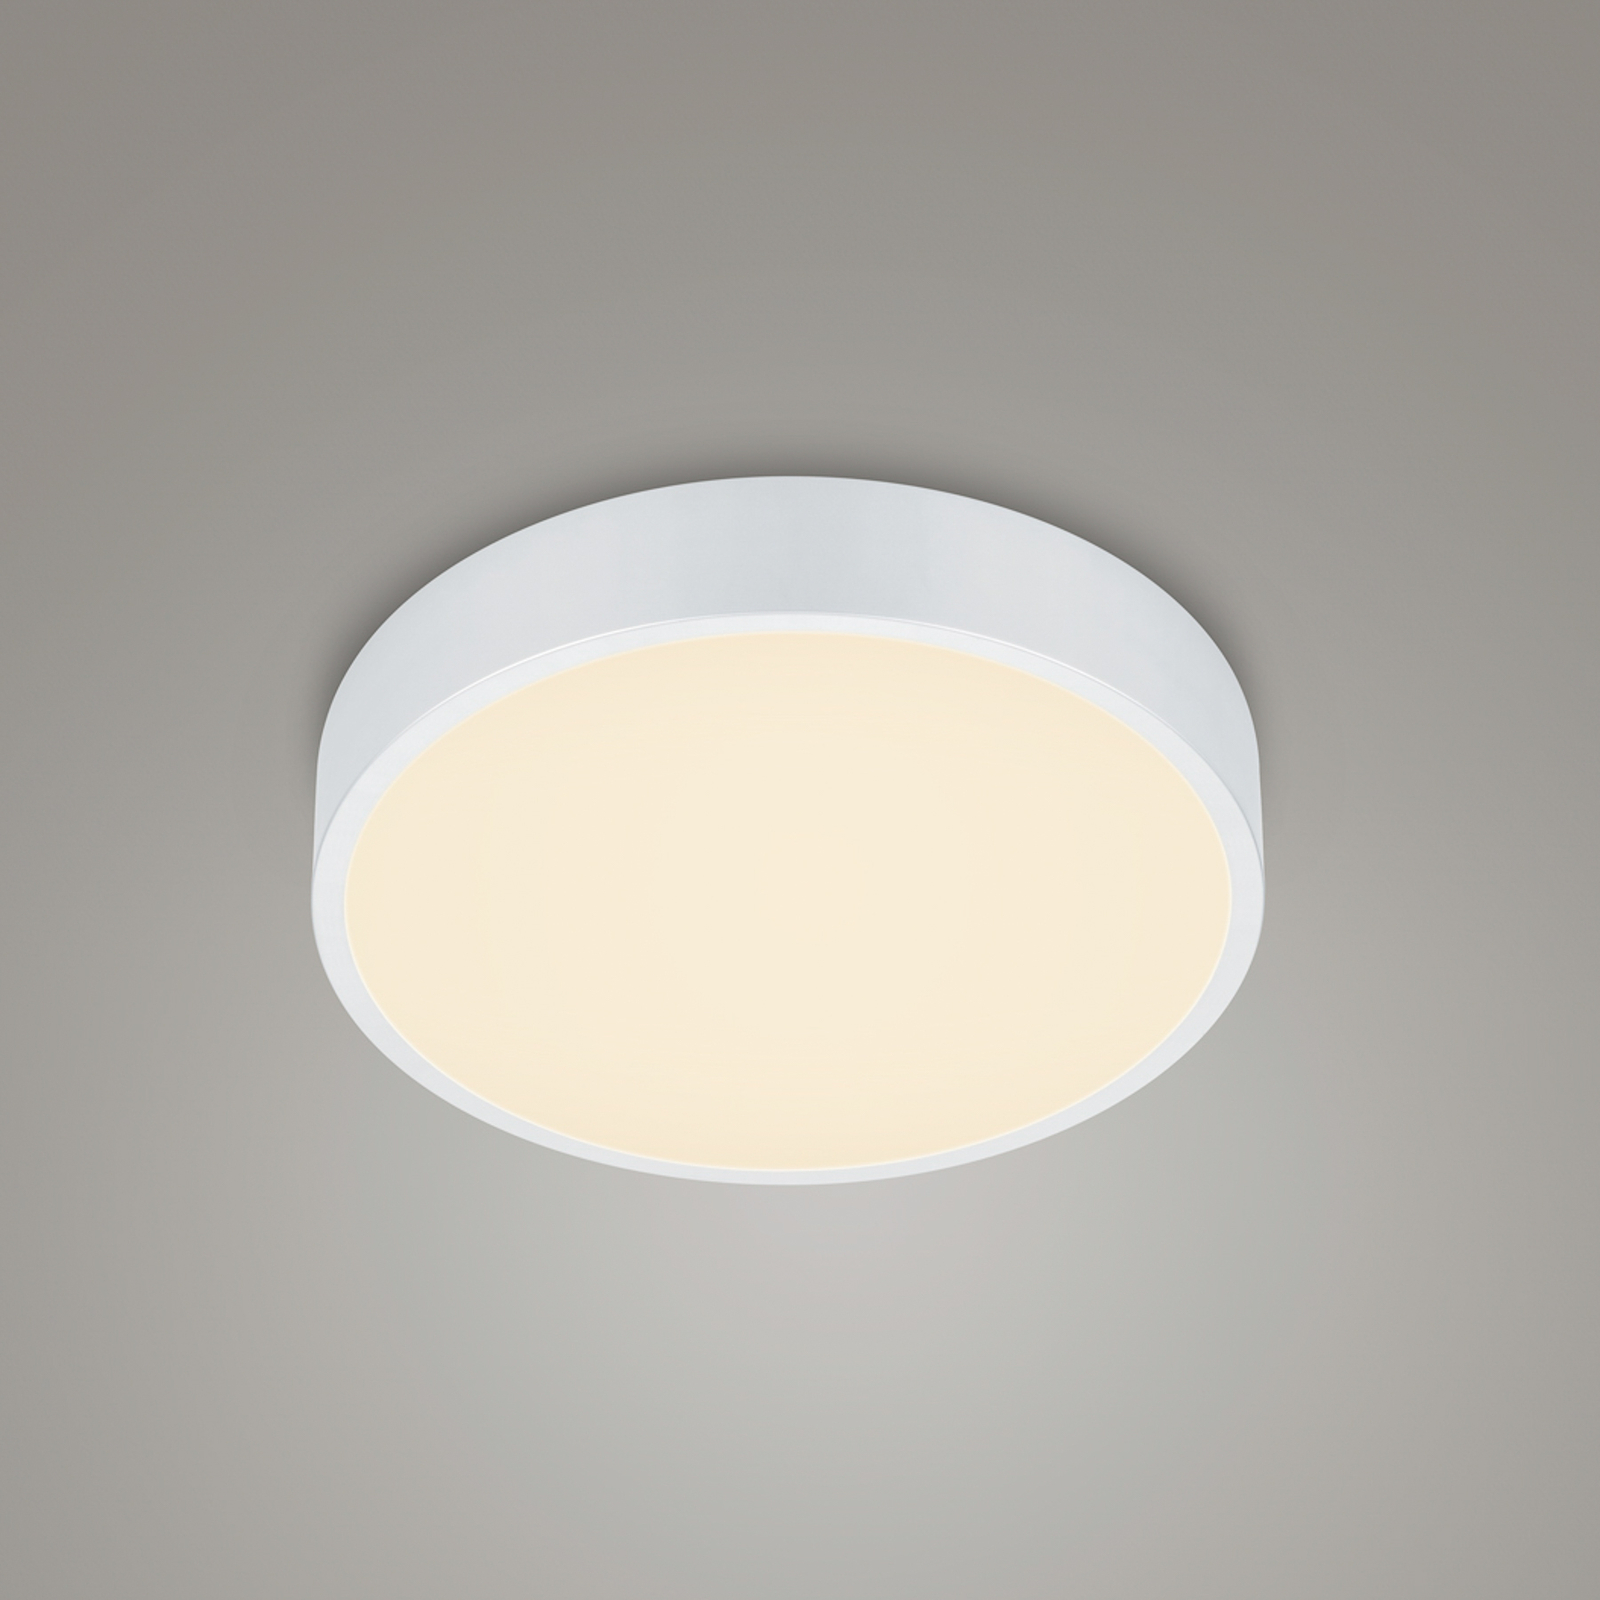 LED ceiling lamp Waco, CCT, Ø 31cm, matt white